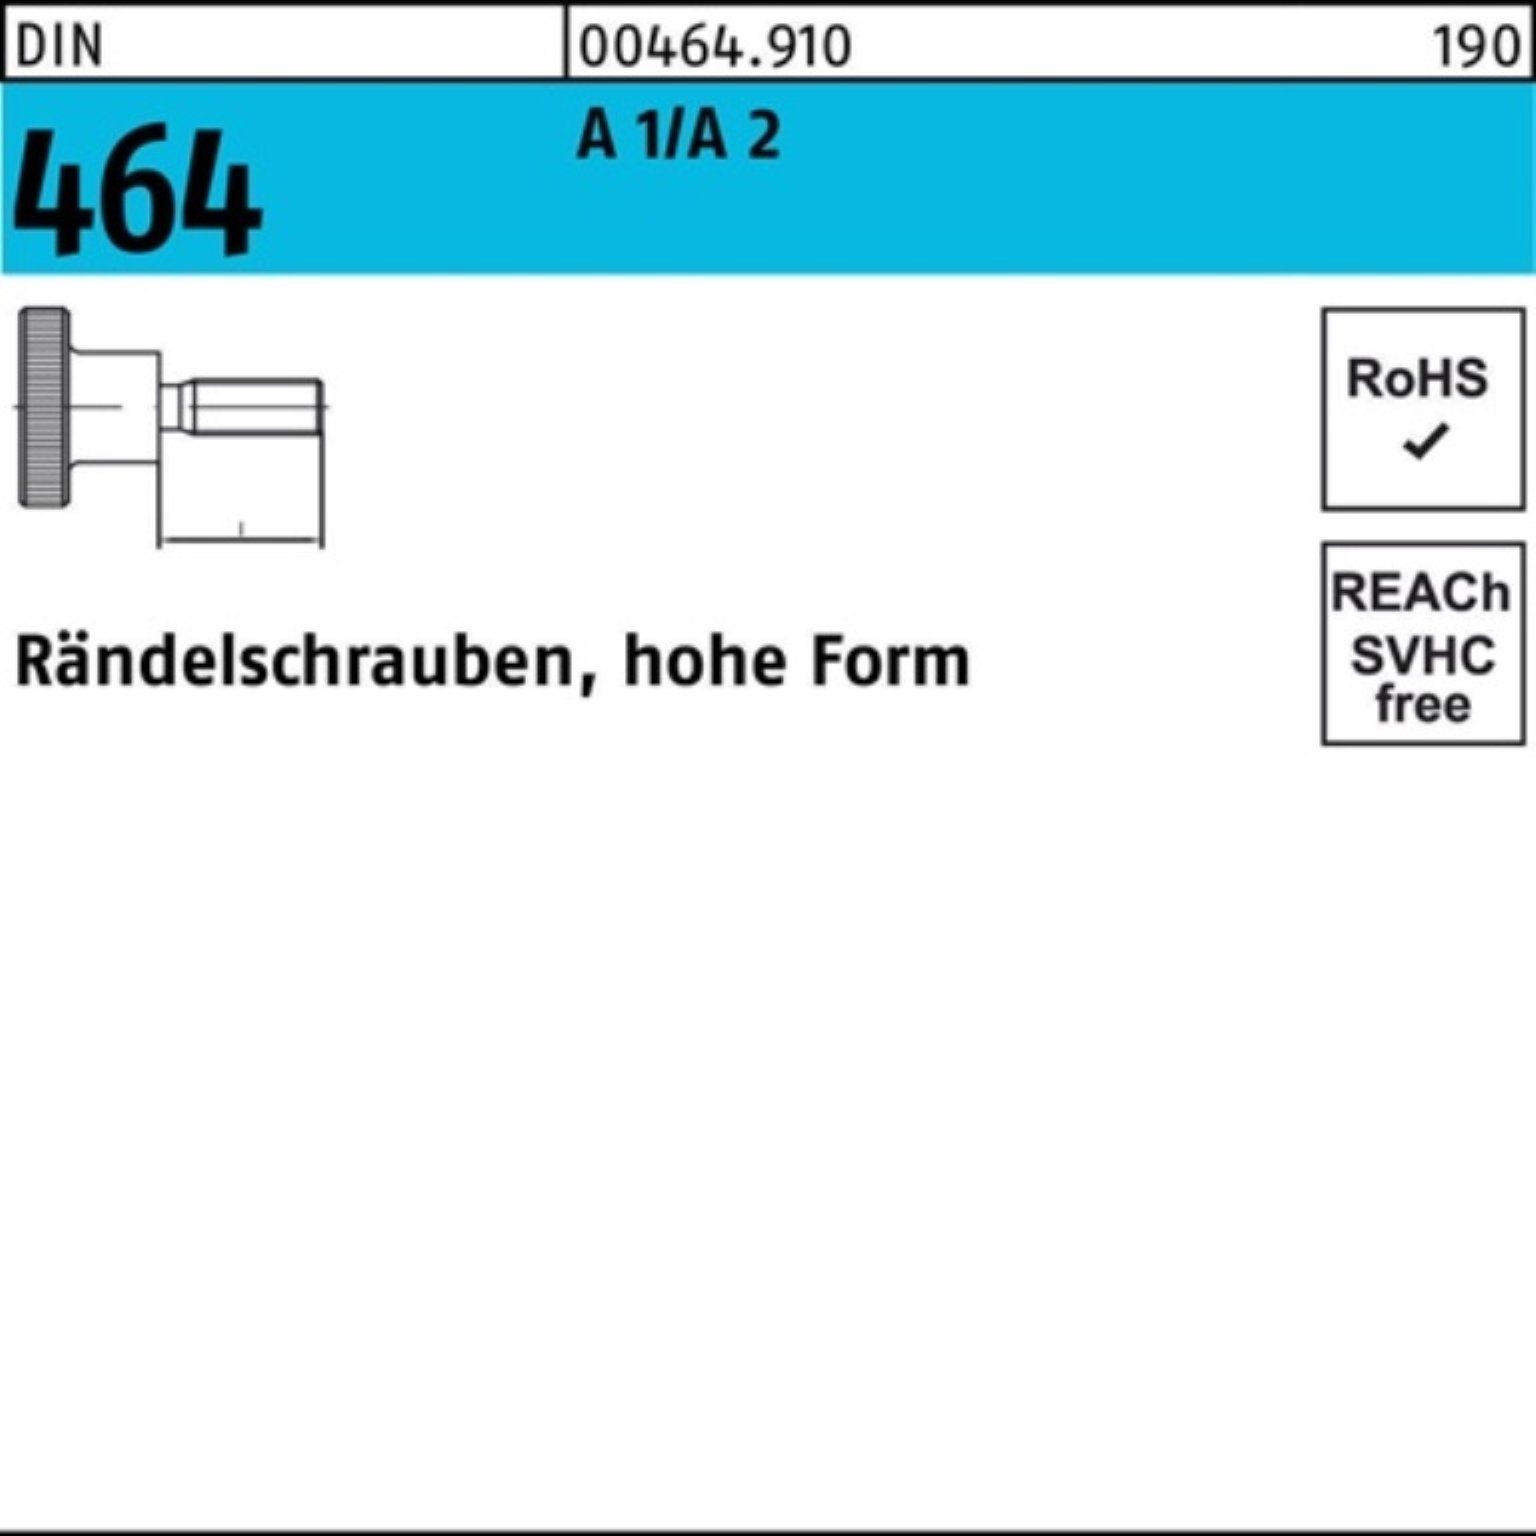 Reyher Schraube 100er 1/A FormM4x Stück 25 464 2 hohe A Pack 10 Rändelschraube DIN D